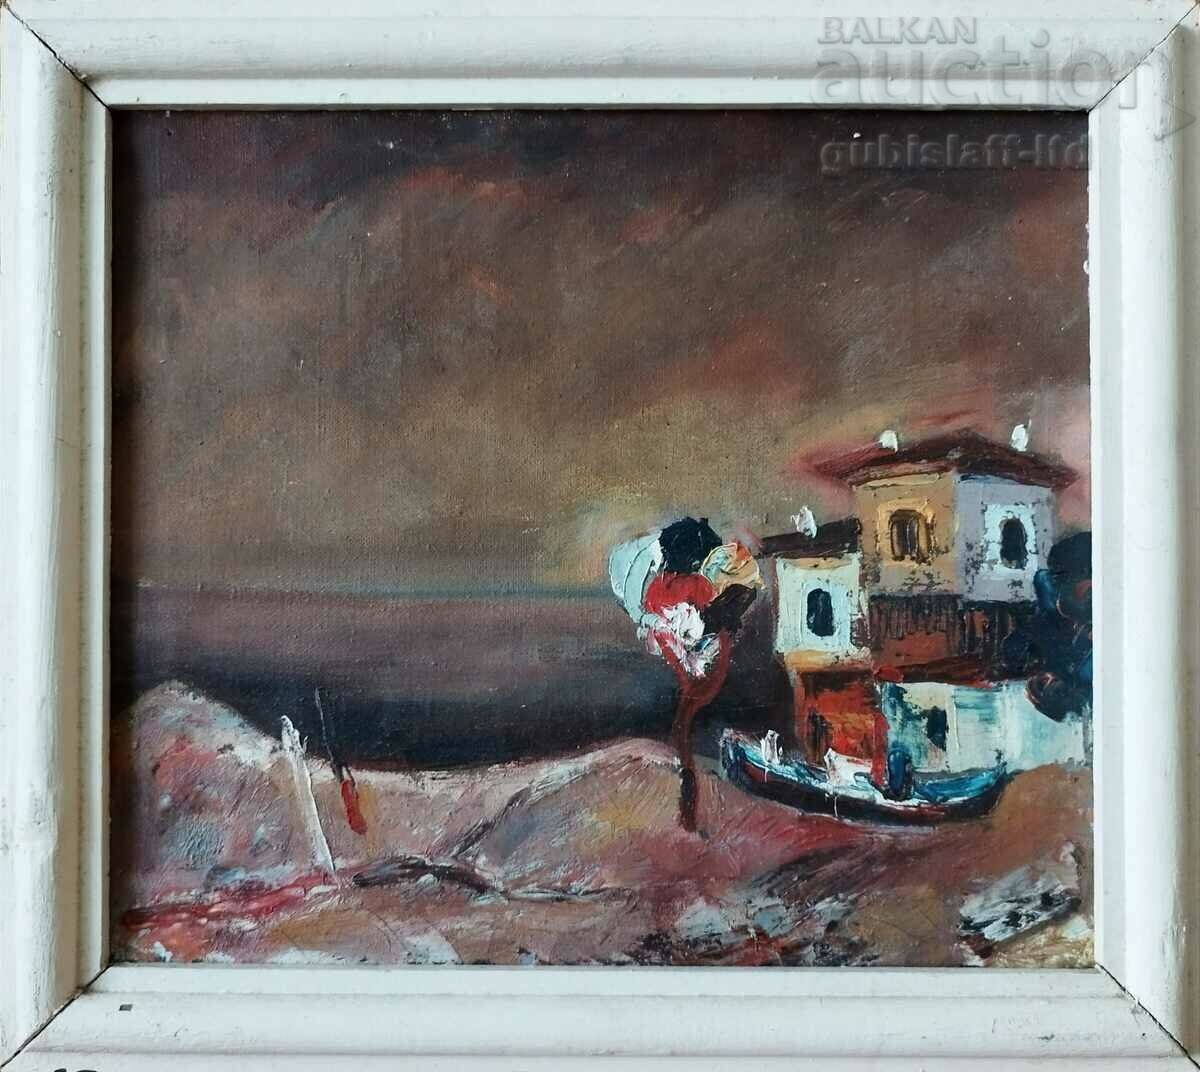 Ζωγραφική, σπίτια, θάλασσα, βάρκα, δεκαετία του 1980.